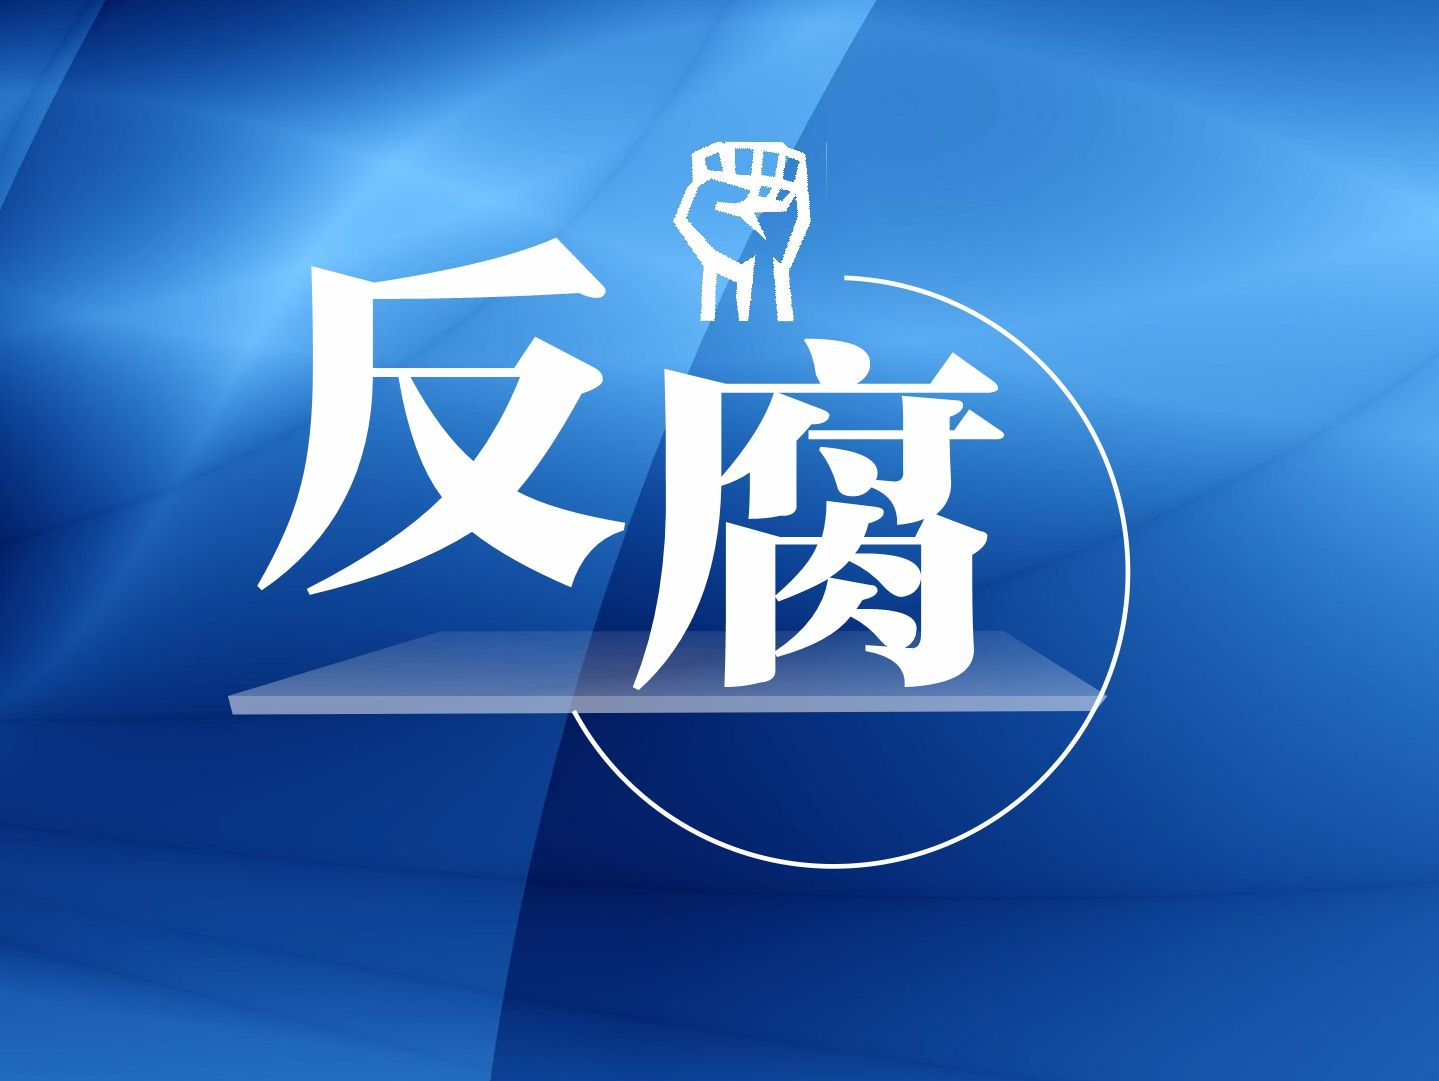 湛江海关党委委员、副关长郑伟明接受纪律审查和监察调查